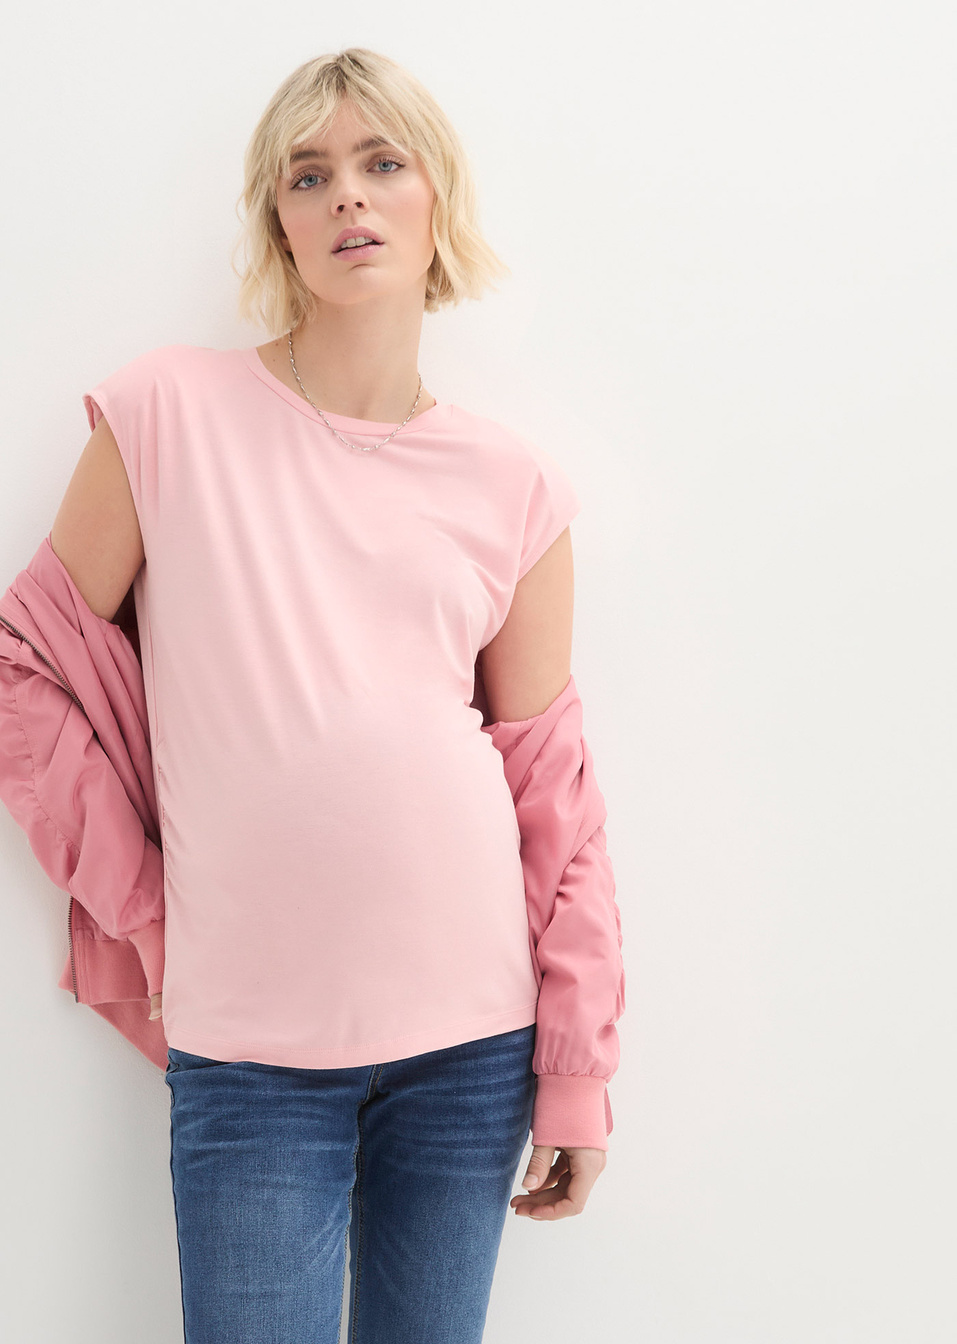 Μπλούζα εγκυμοσύνης με βάτες-bpc bonprix collection